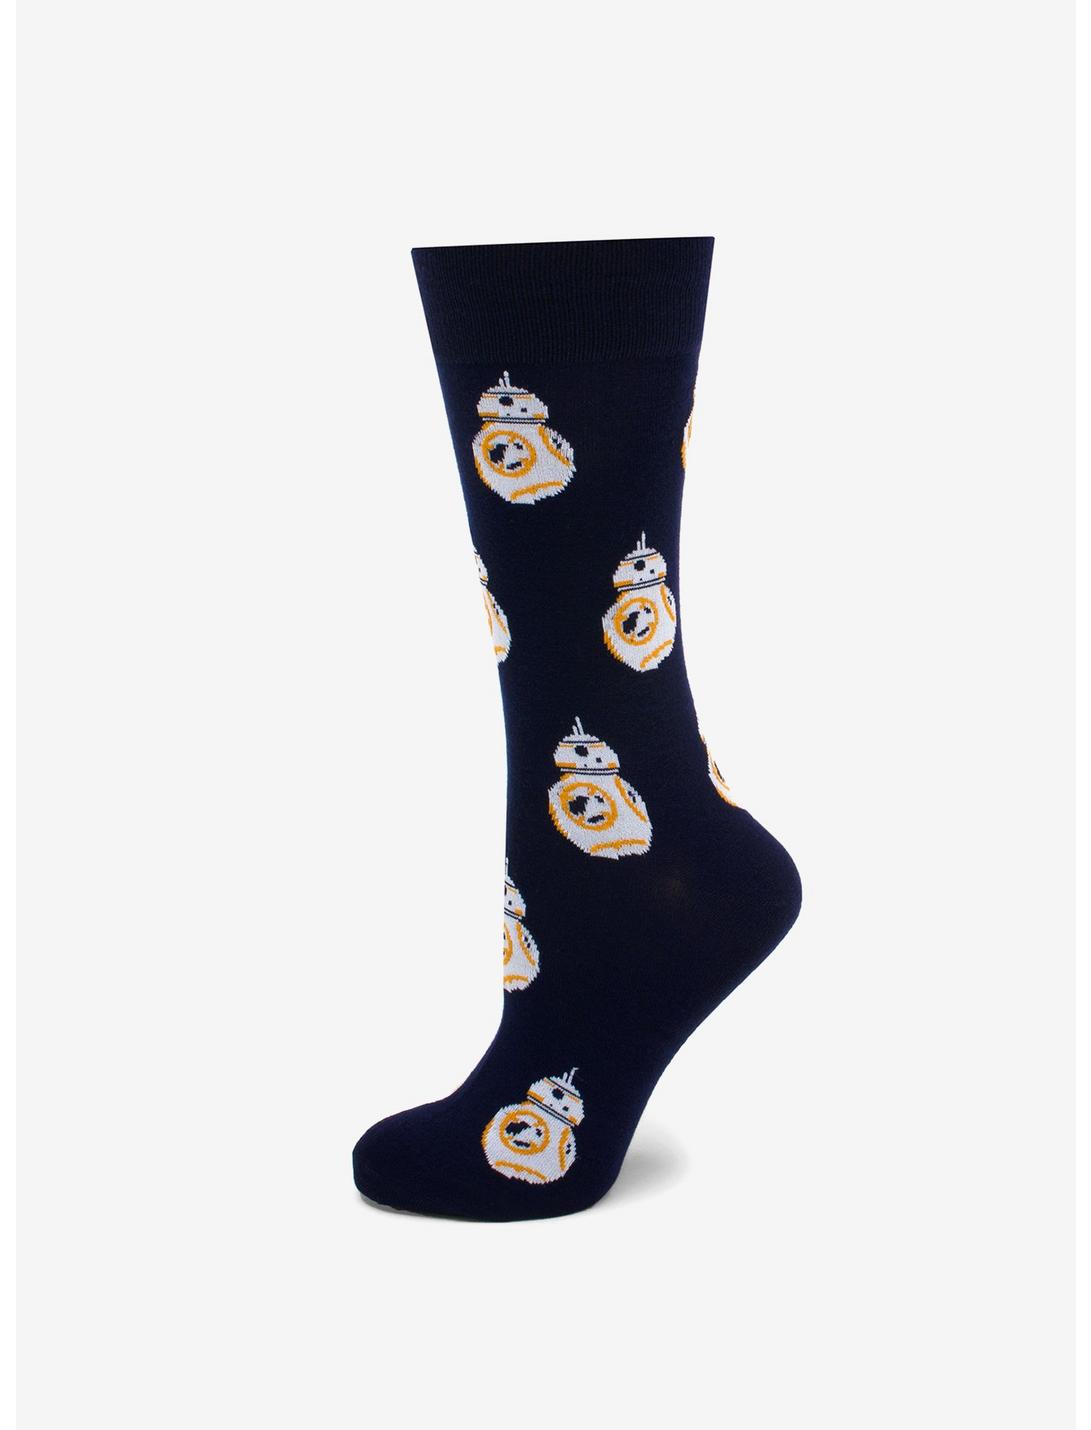 Star Wars BB-8 Navy Socks, , hi-res